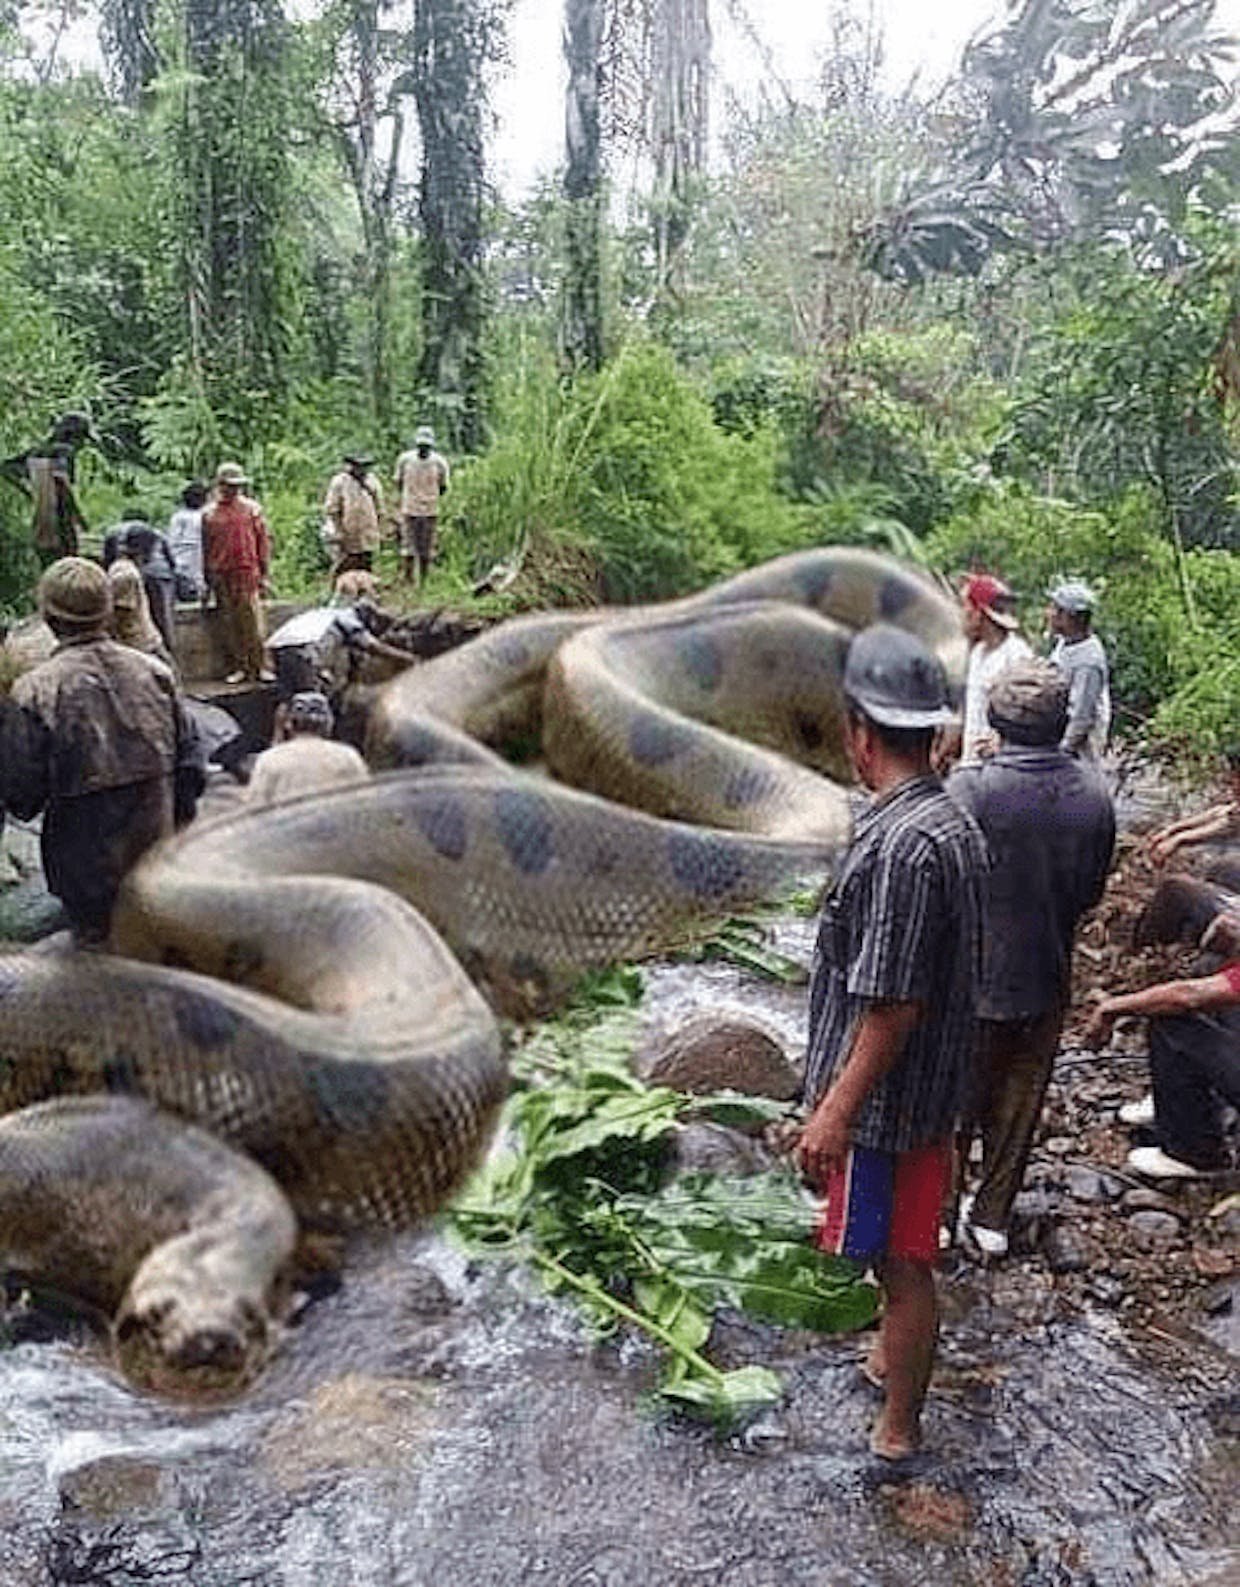 Сколько метров анаконда. Самая большая Анаконда река Амазонка. Анаконда змея. Большая змея Анаконда в Амазонке. Самая большая Анаконда 41м.